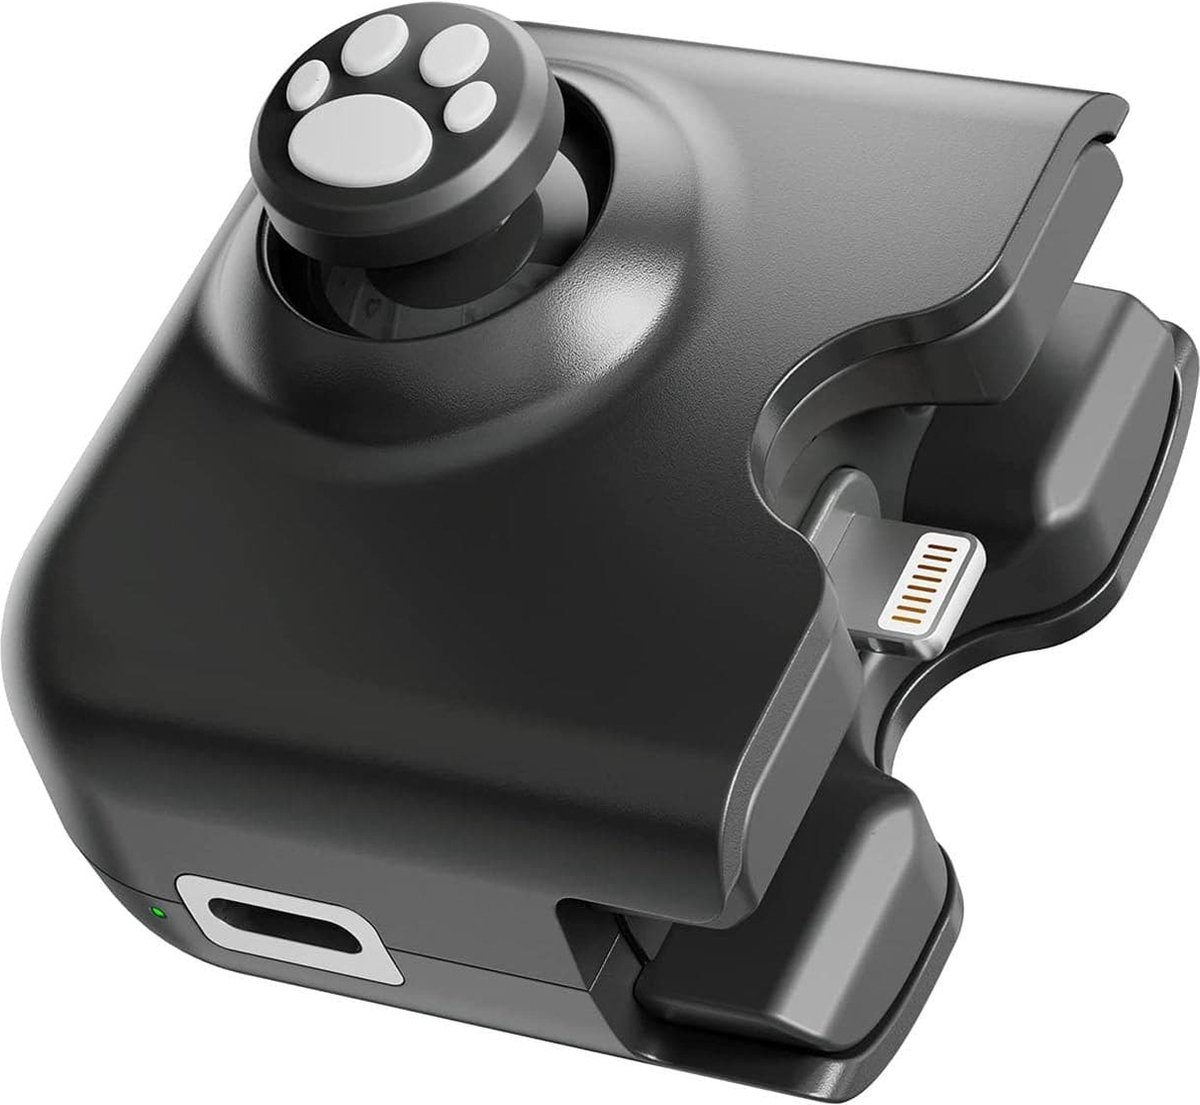 iPhone controller en game Joystick - Game als een Baas met deze joystick!